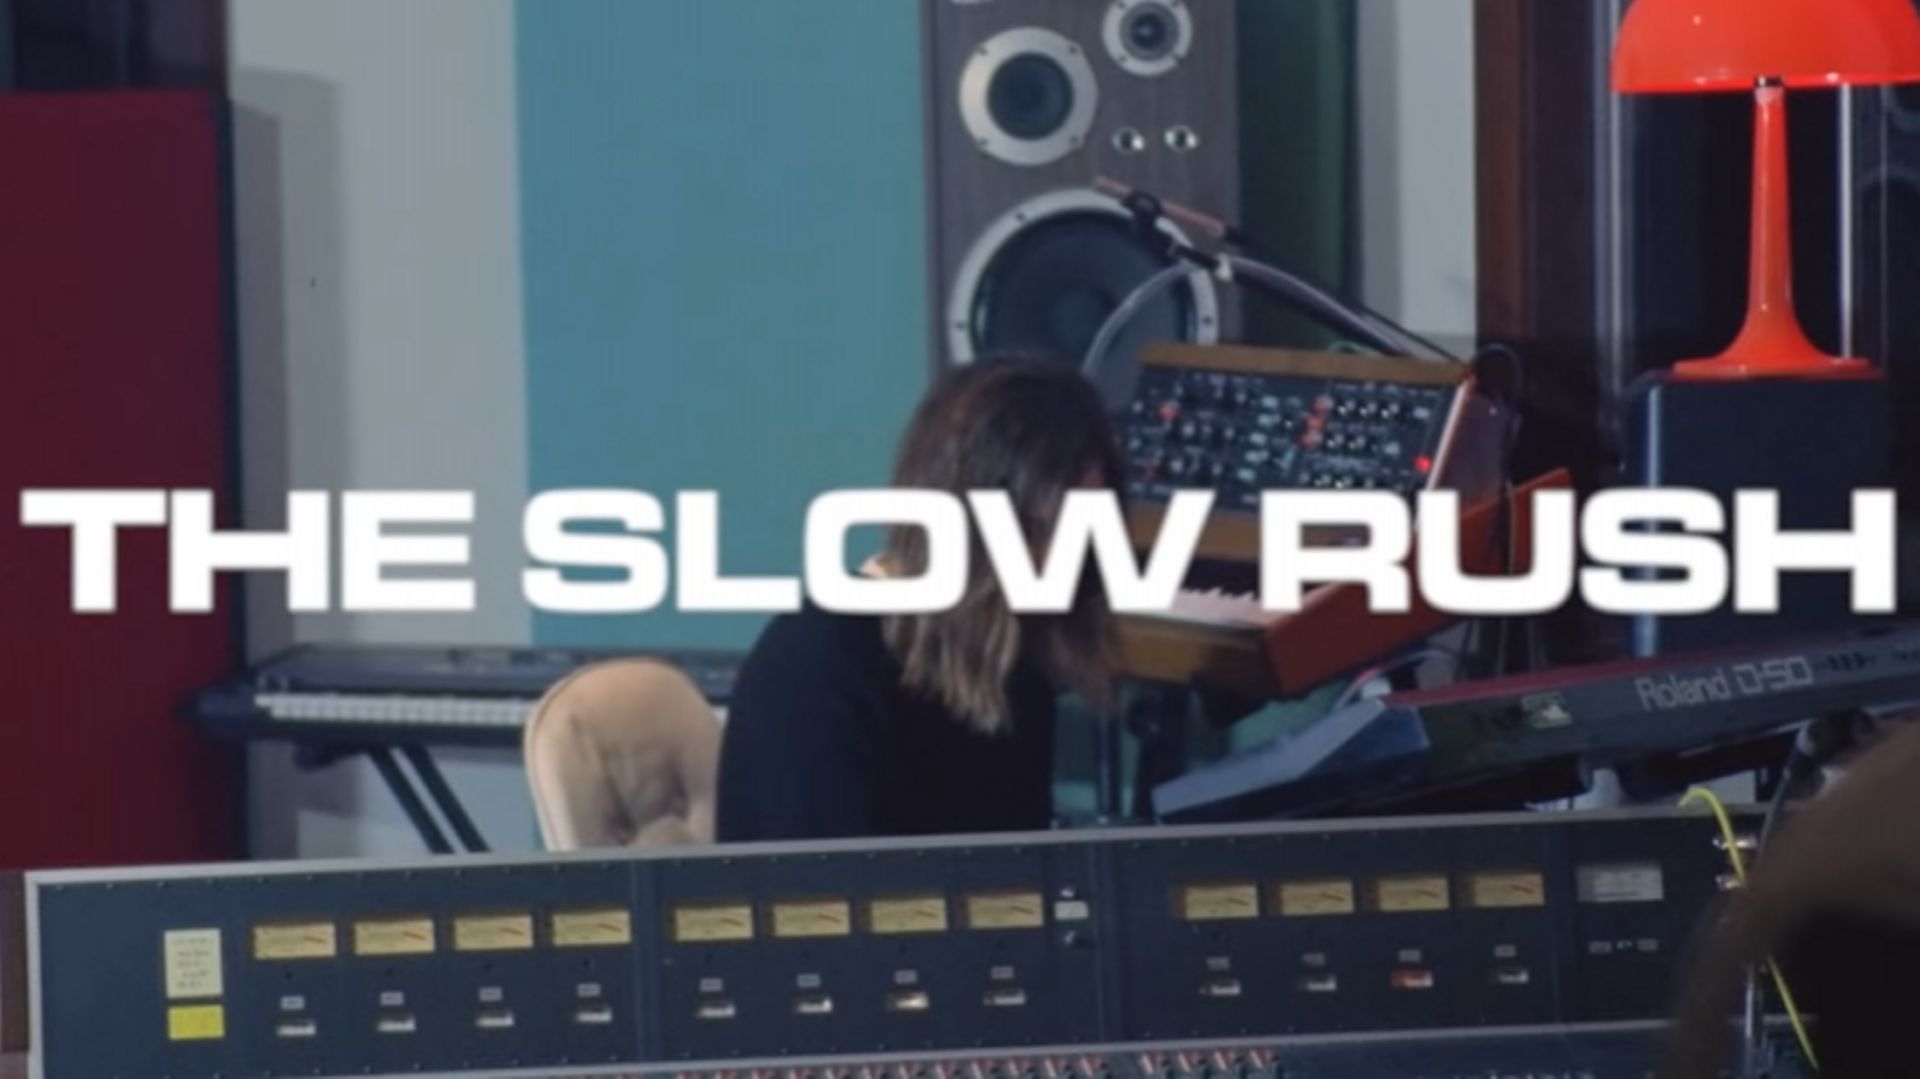 Sortie du nouvel album de Tame Impala Slow Rush pour 2020